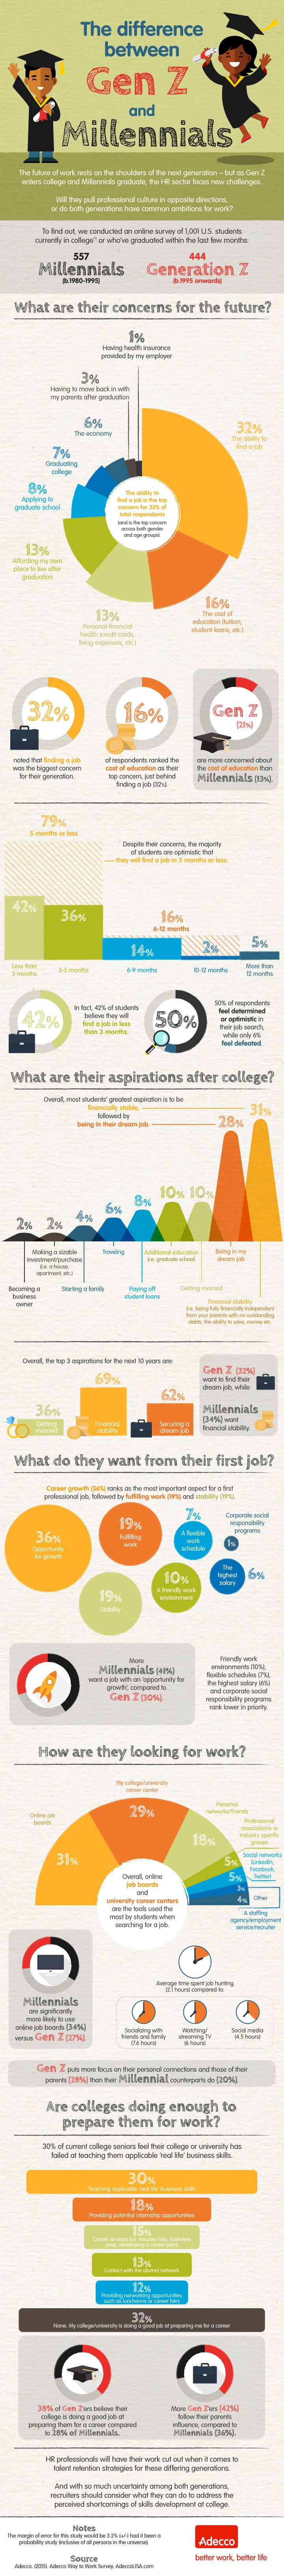 GenZ vs Millennials Infographic